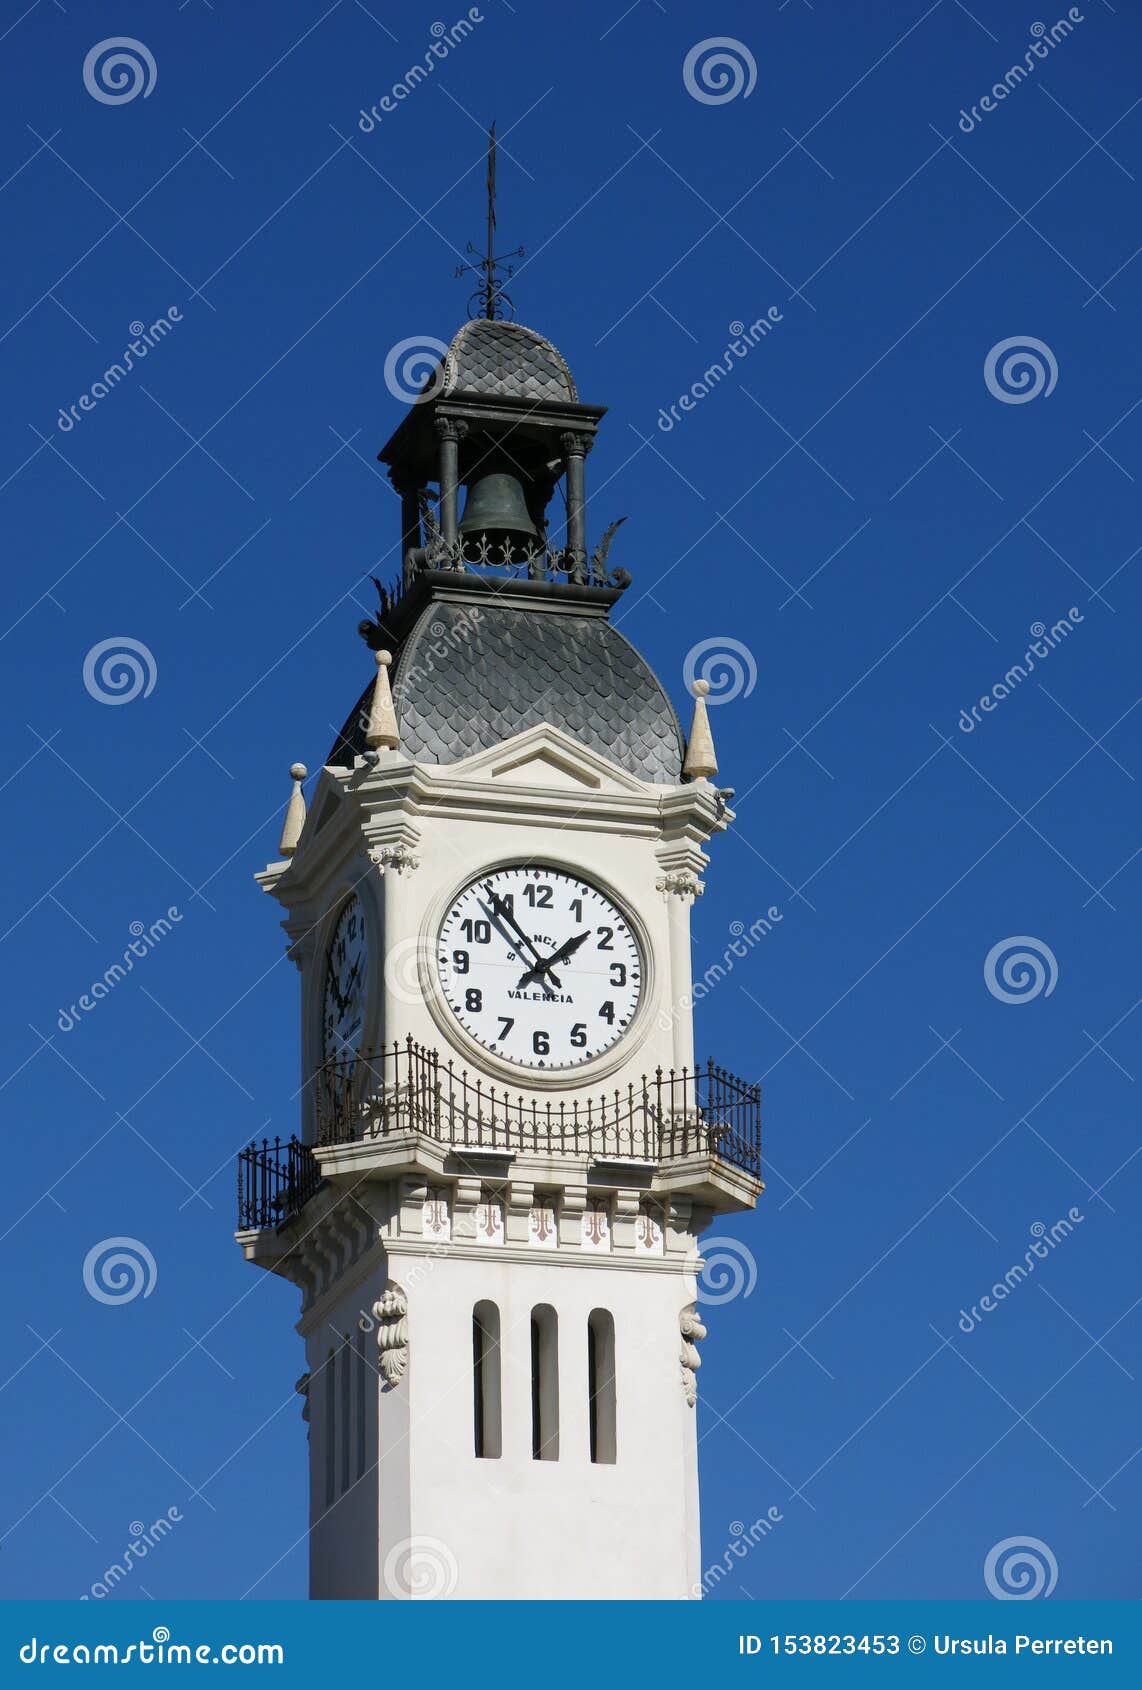 edificio del reloj. clock tower at the harbour of valencia